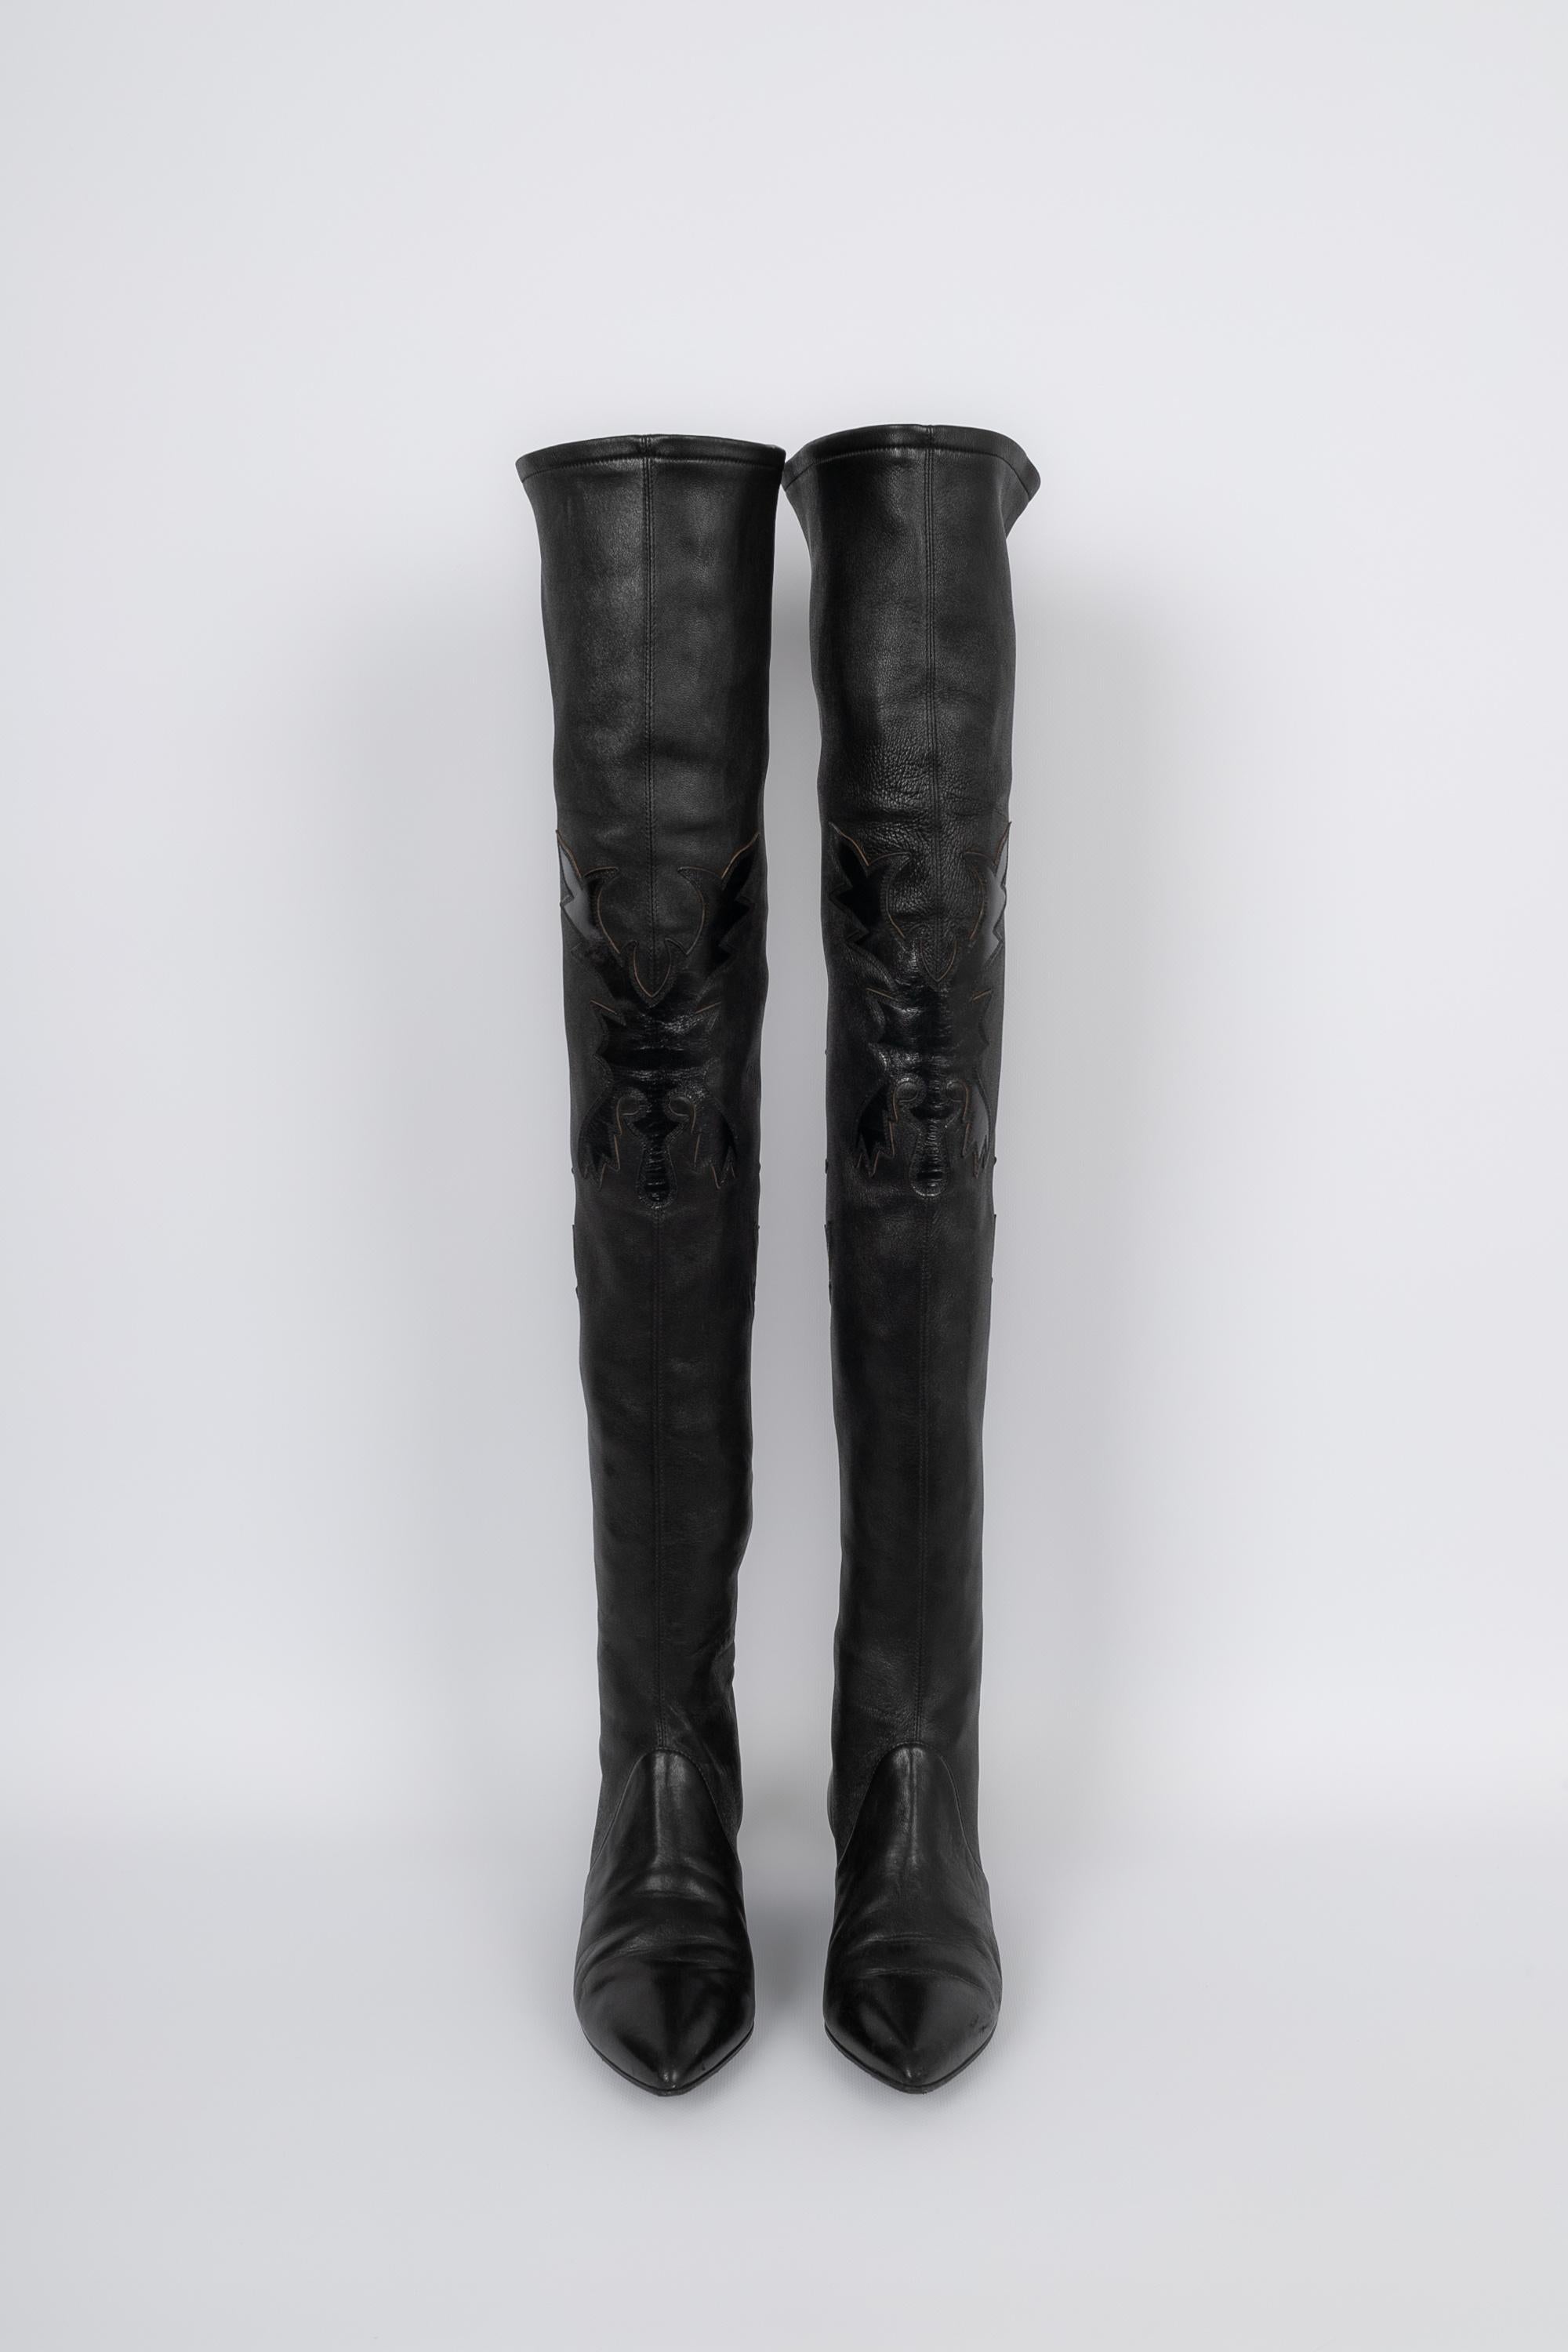 CHANEL - (Made in Italy) Schwarze Cowboy-Stiefel aus Lammfell mit Muster. 37,5 FR Größenangabe. Zu erwähnen ist, dass die Sohlen der Schuhe leicht aufgerieben sind.

Bedingung:
Sehr guter Zustand

Abmessungen:
Höhe: etwa 70 cm (mit den